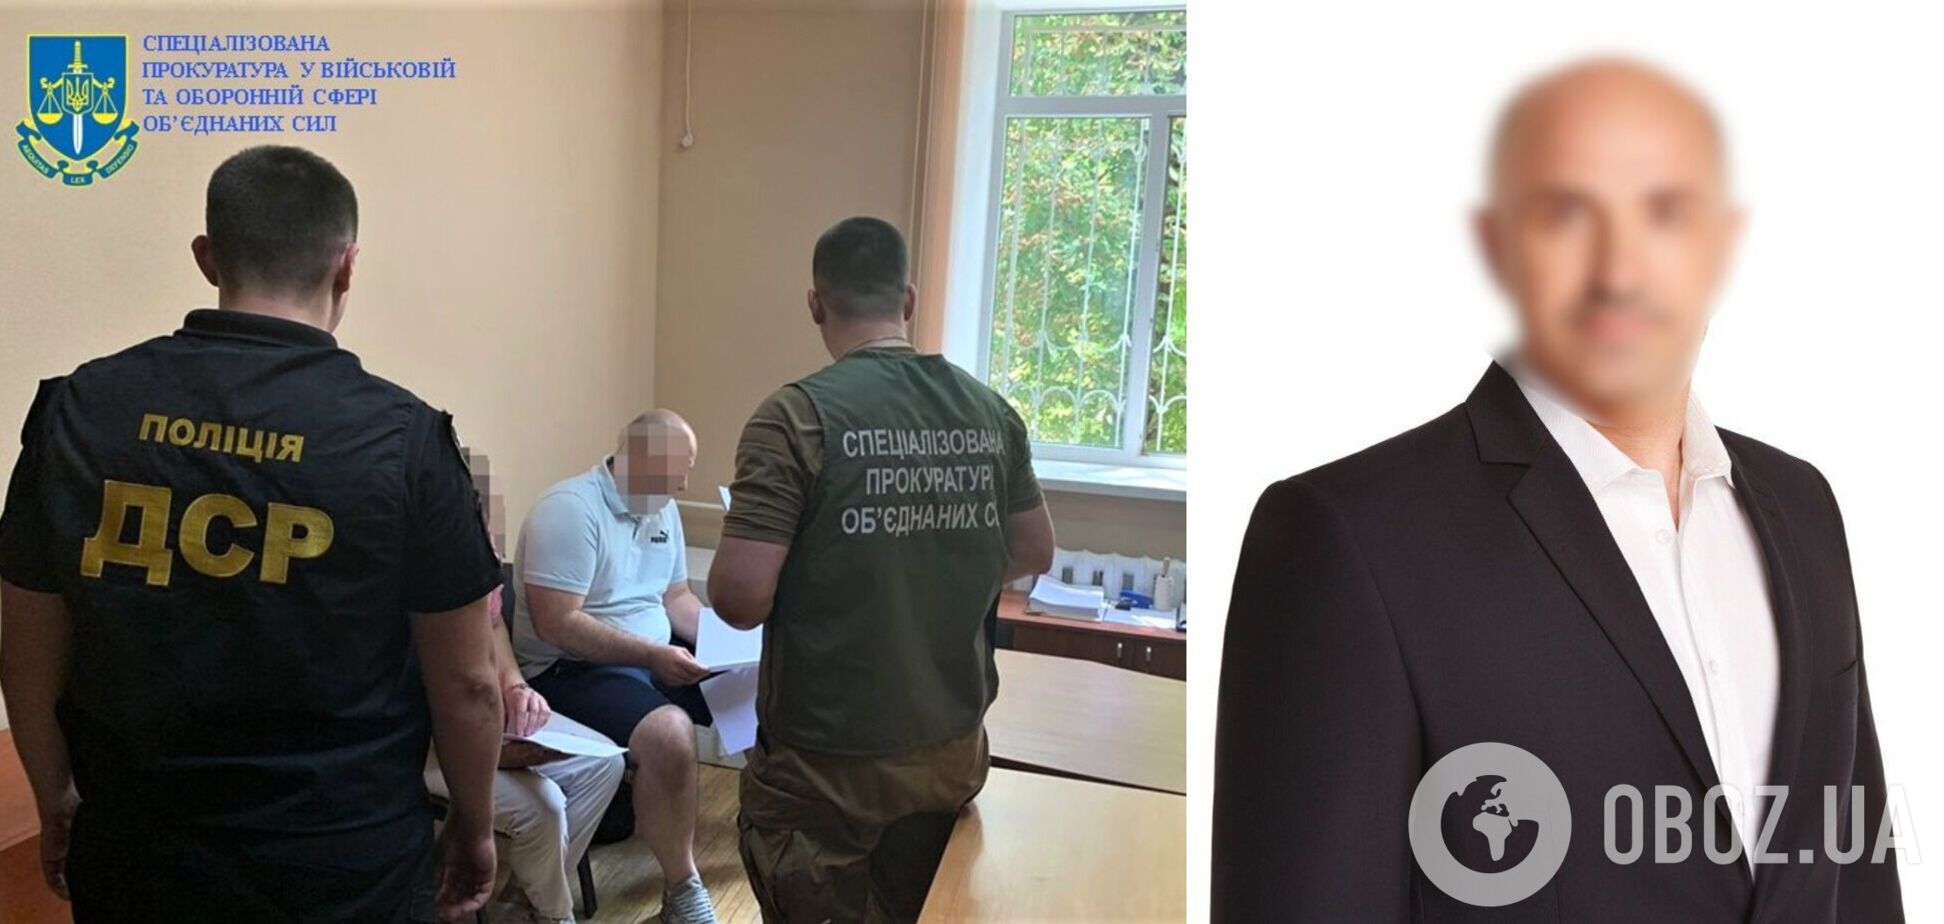 Разворовал деньги на оборону: мэру Константиновки в Донецкой области сообщили о подозрении